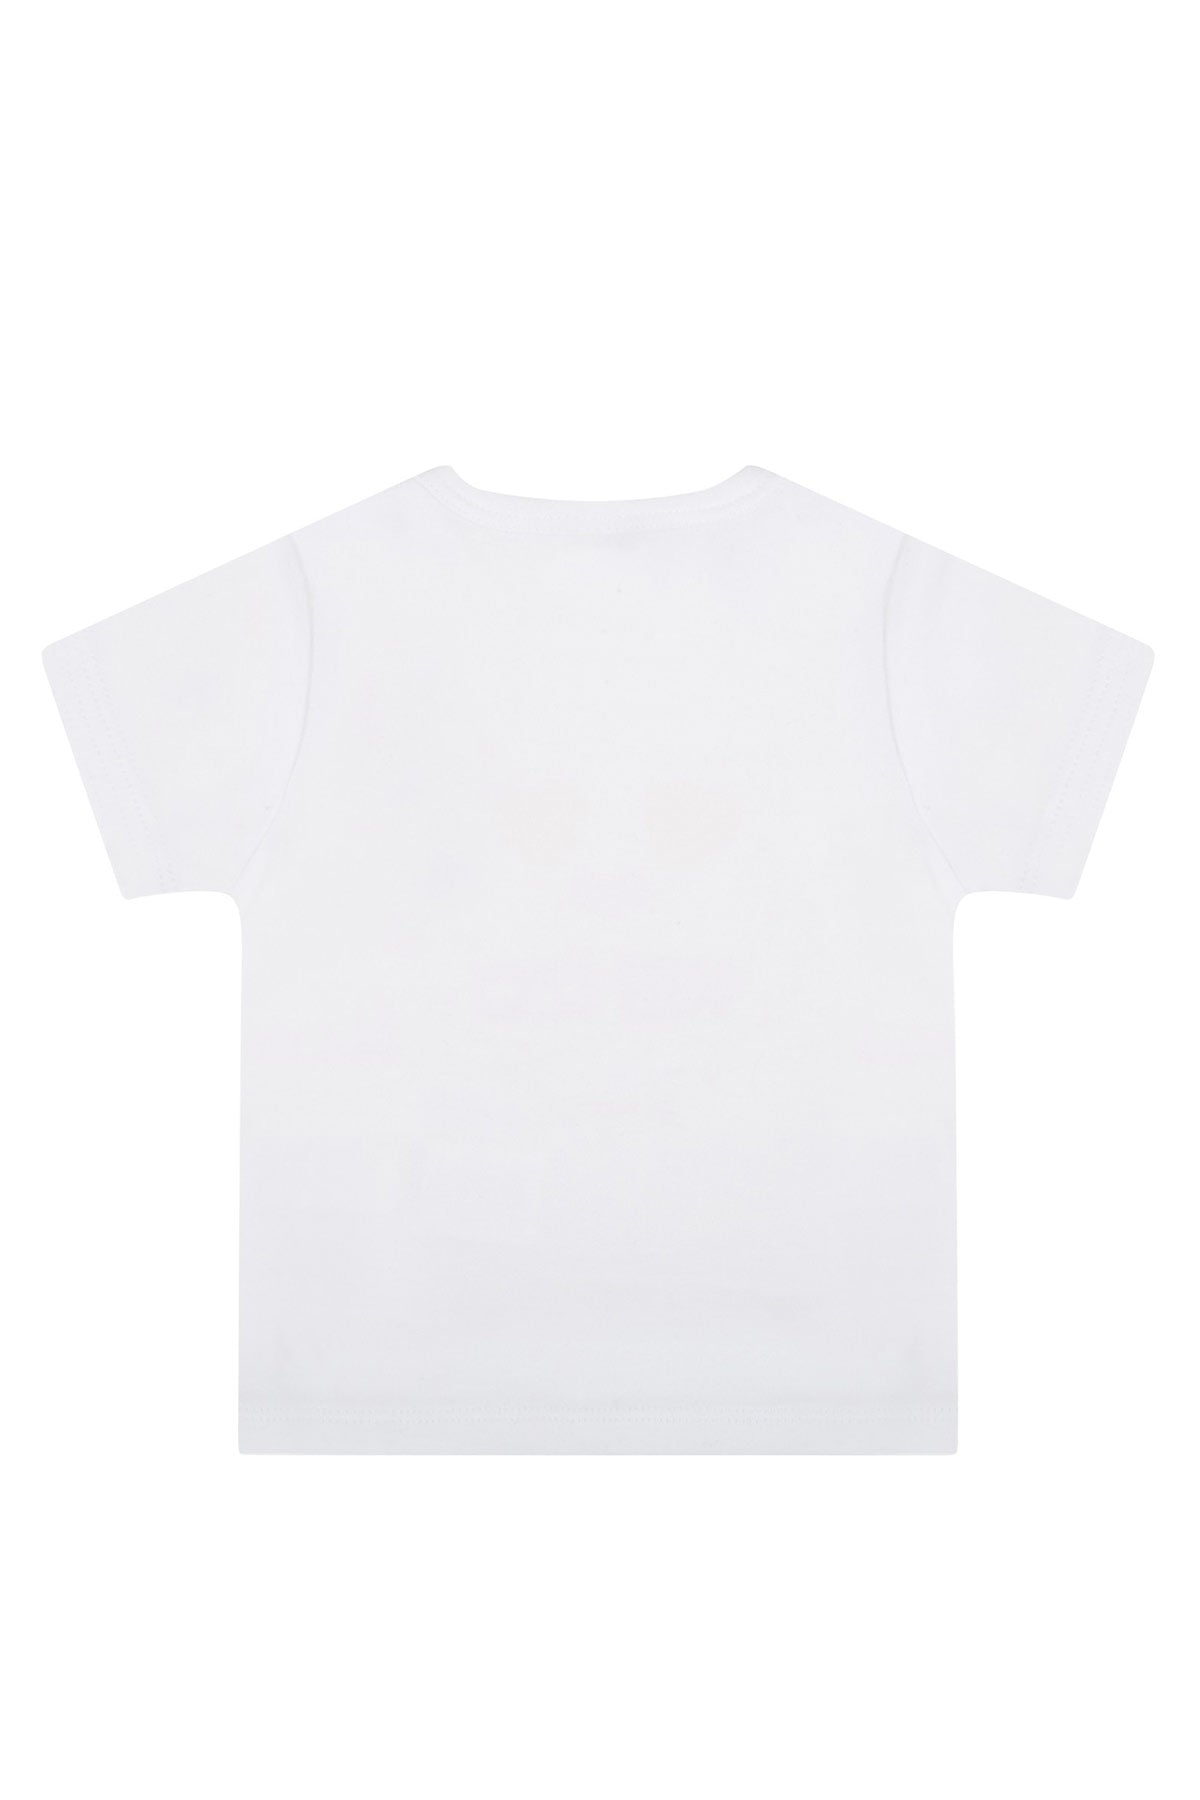 Kenzo Kids 12-18 Ay Kız Bebek Kaplan Logolu T-shirt-Libas Trendy Fashion Store